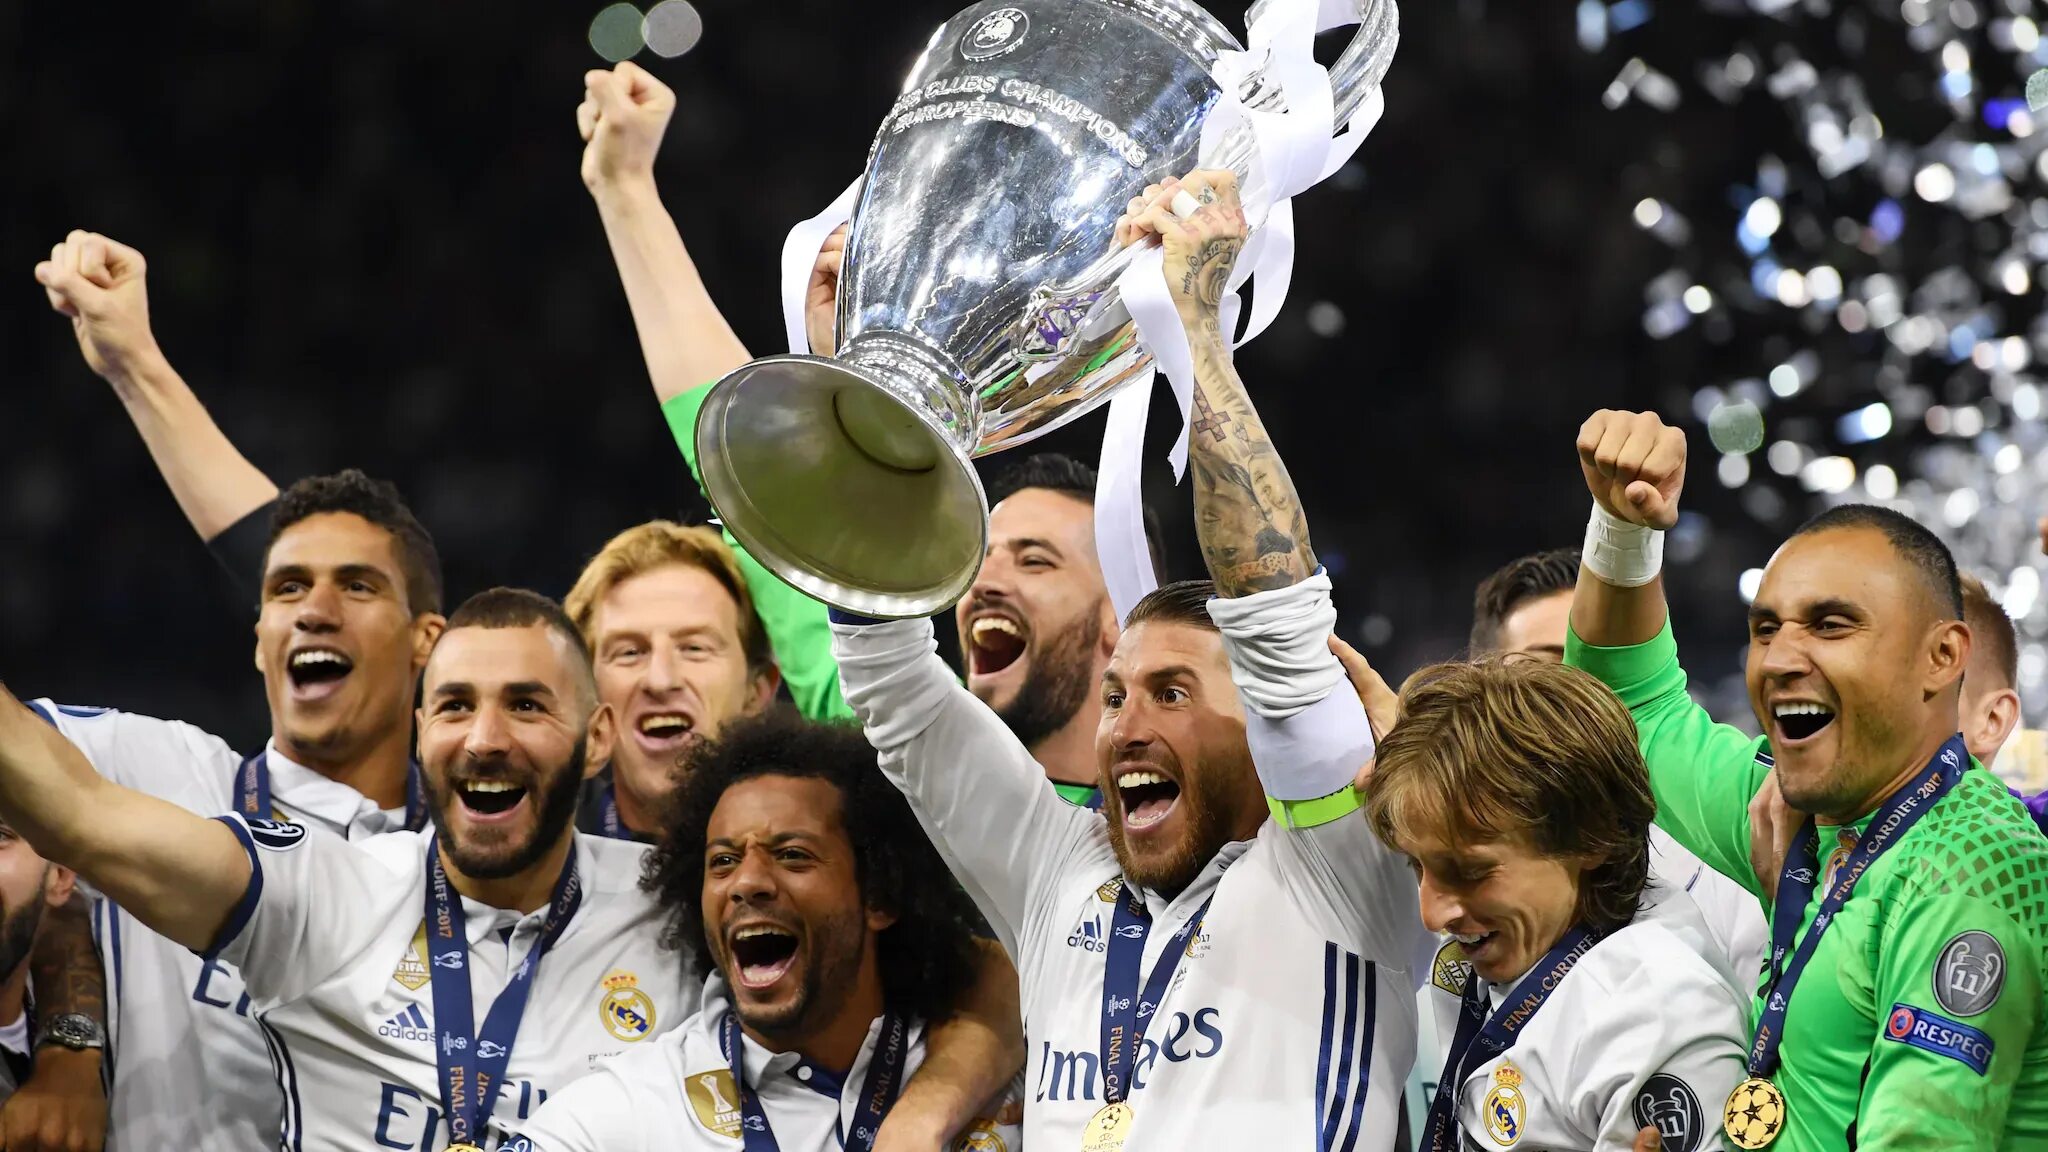 Реал Мадрид Champions League. Реал Мадрид Кубок УЕФА. Лига чемпионов фото. UEFA Champions League real Madrid. Real madrid champions